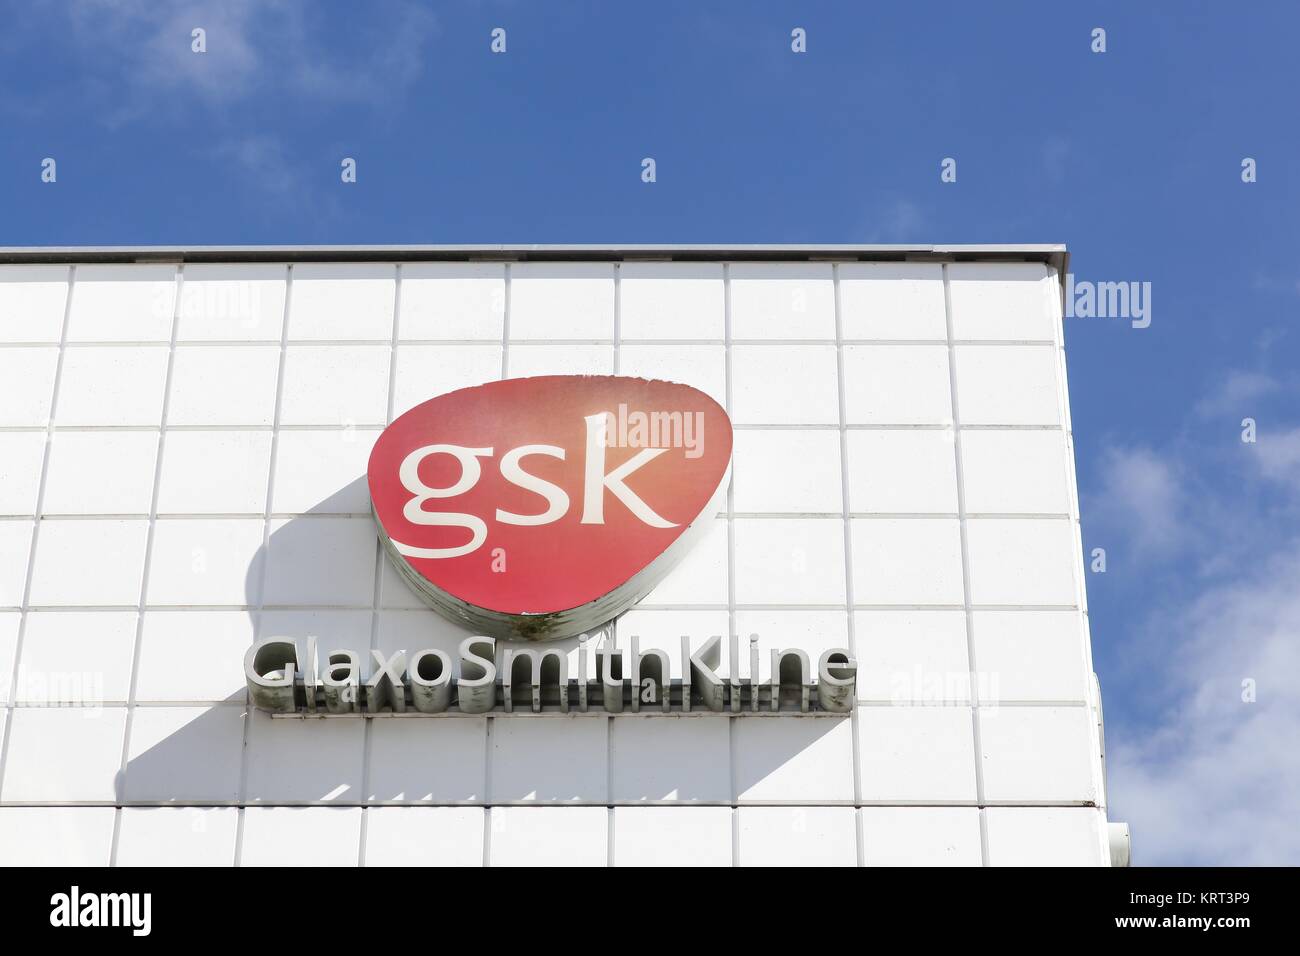 Brondby, Danemark - 10 septembre 2017 : GlaxoSmithKline GSK est également appelé une société pharmaceutique britannique basée à Brentford, Londres Banque D'Images